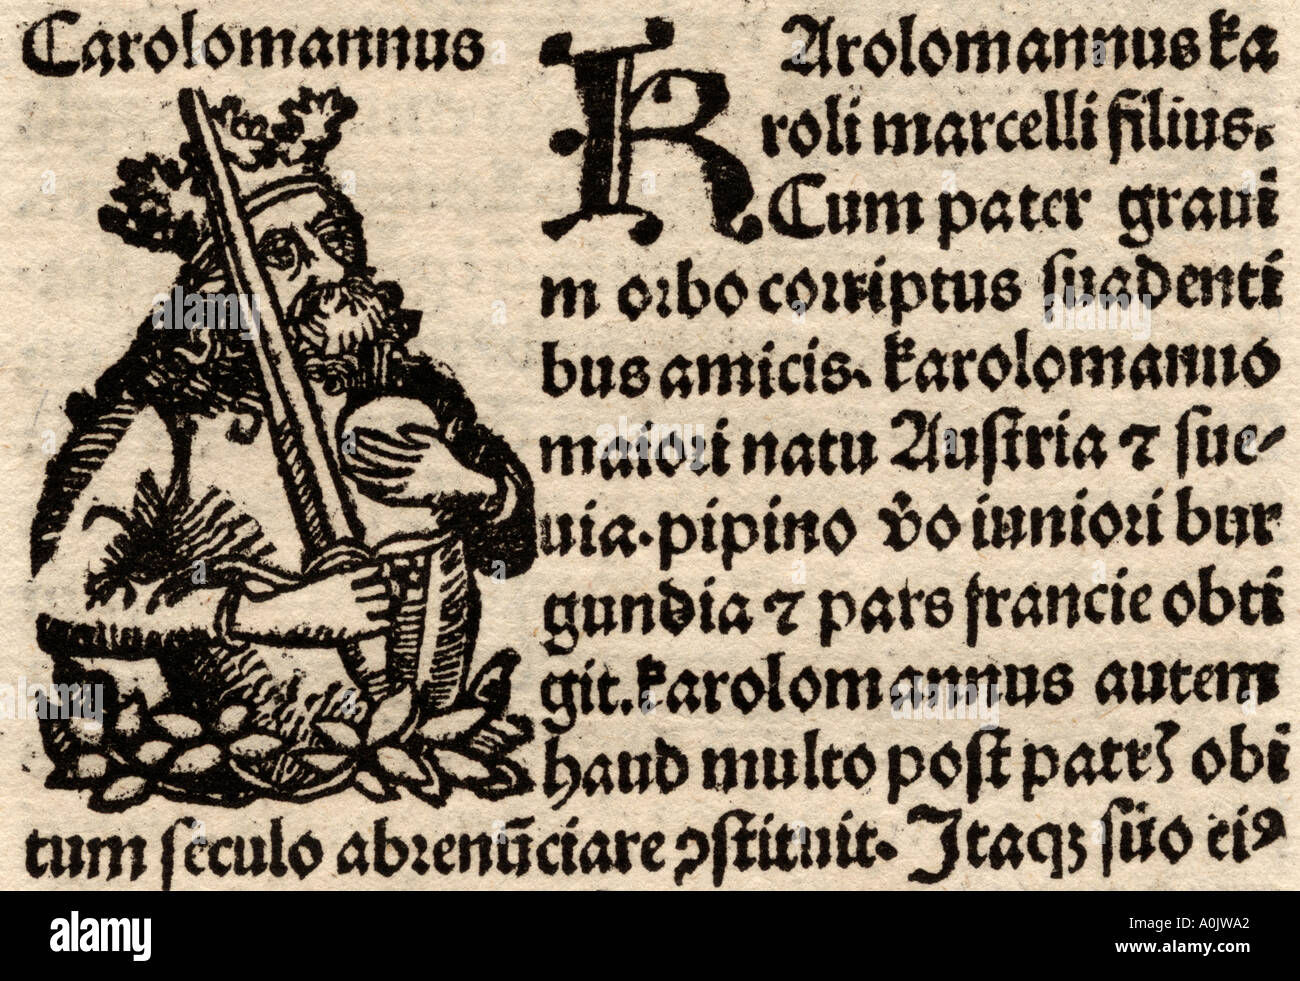 Detail vom ursprünglichen incunable Blatt in Lateinamerika von Hartmut Schedel Liber Chronicorum Gedruckt von Schoensperger in 1497. Stockfoto